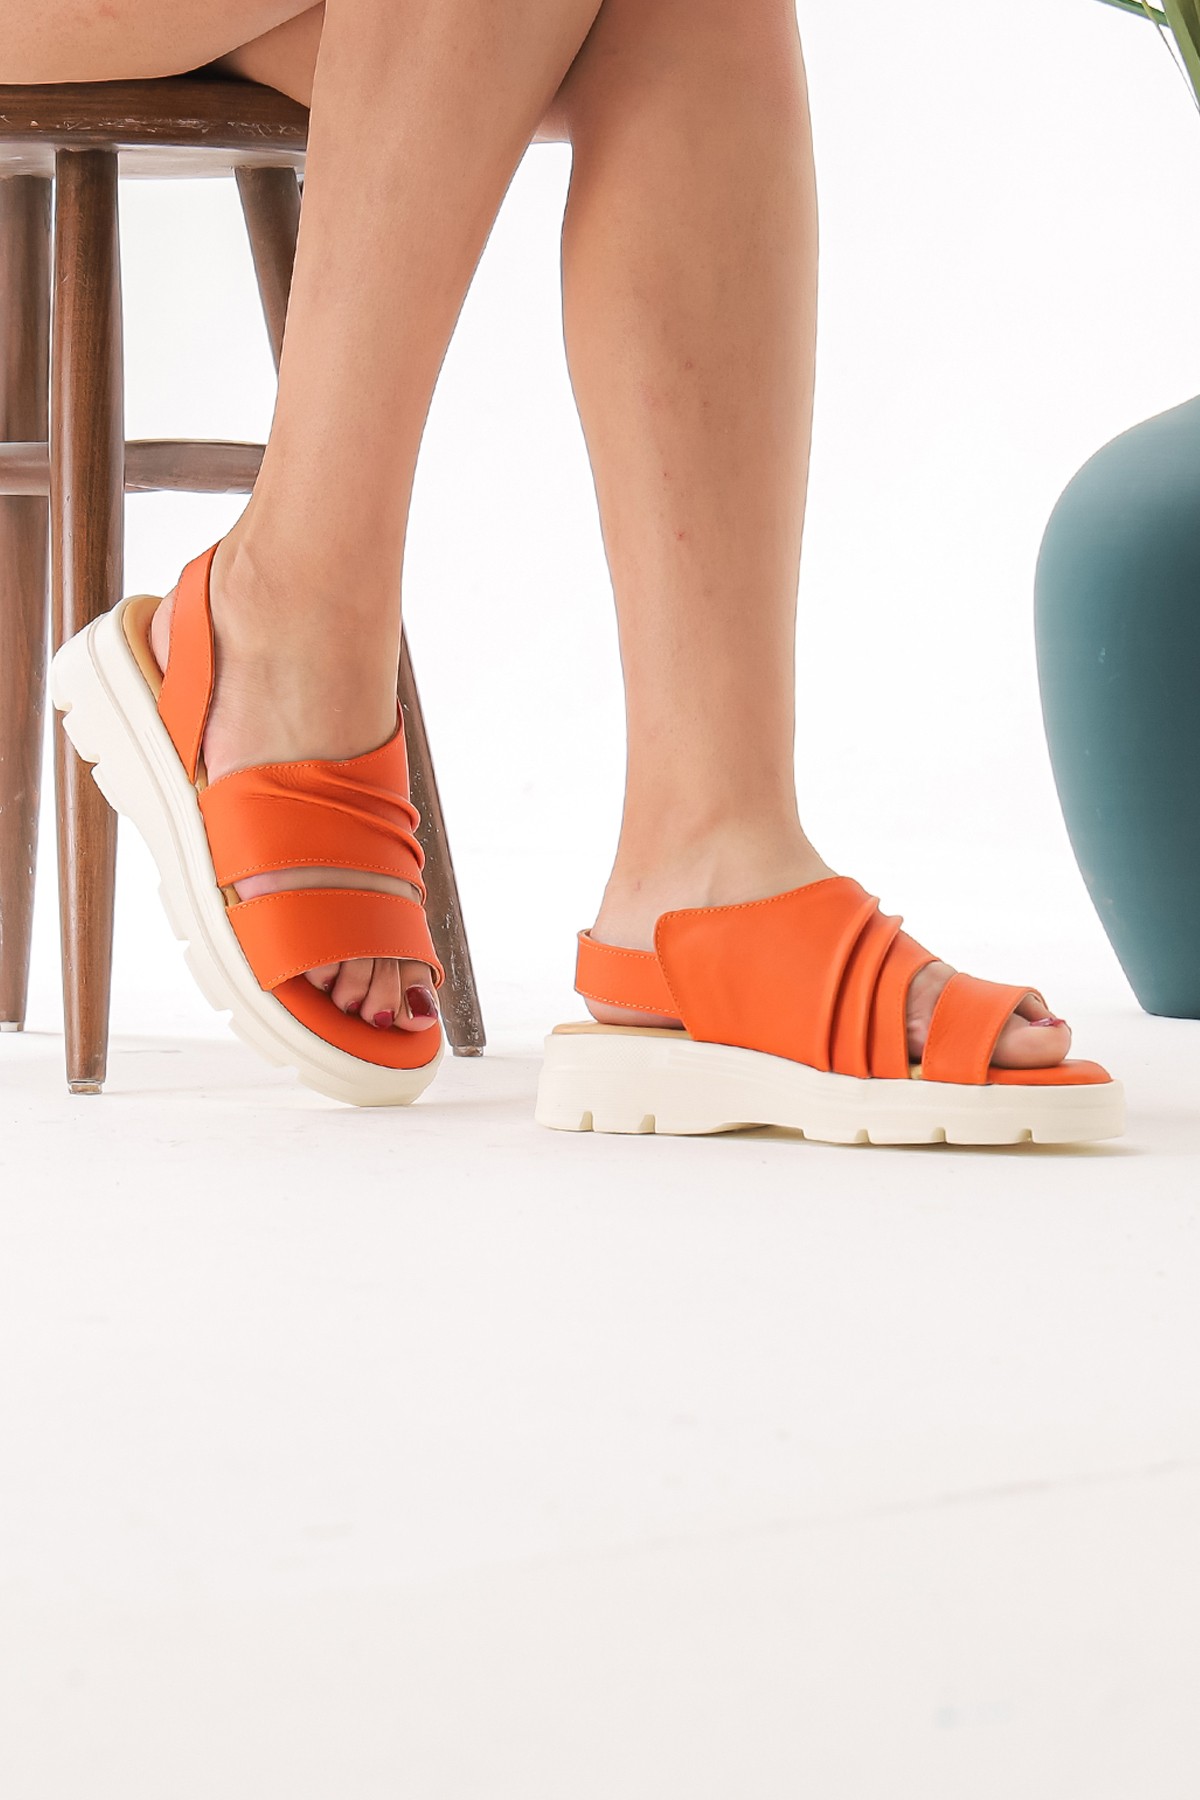 Cooliza Hakiki Lastikli Kadın Rahat Günlük Sandalet Ayakkabı - Turuncu